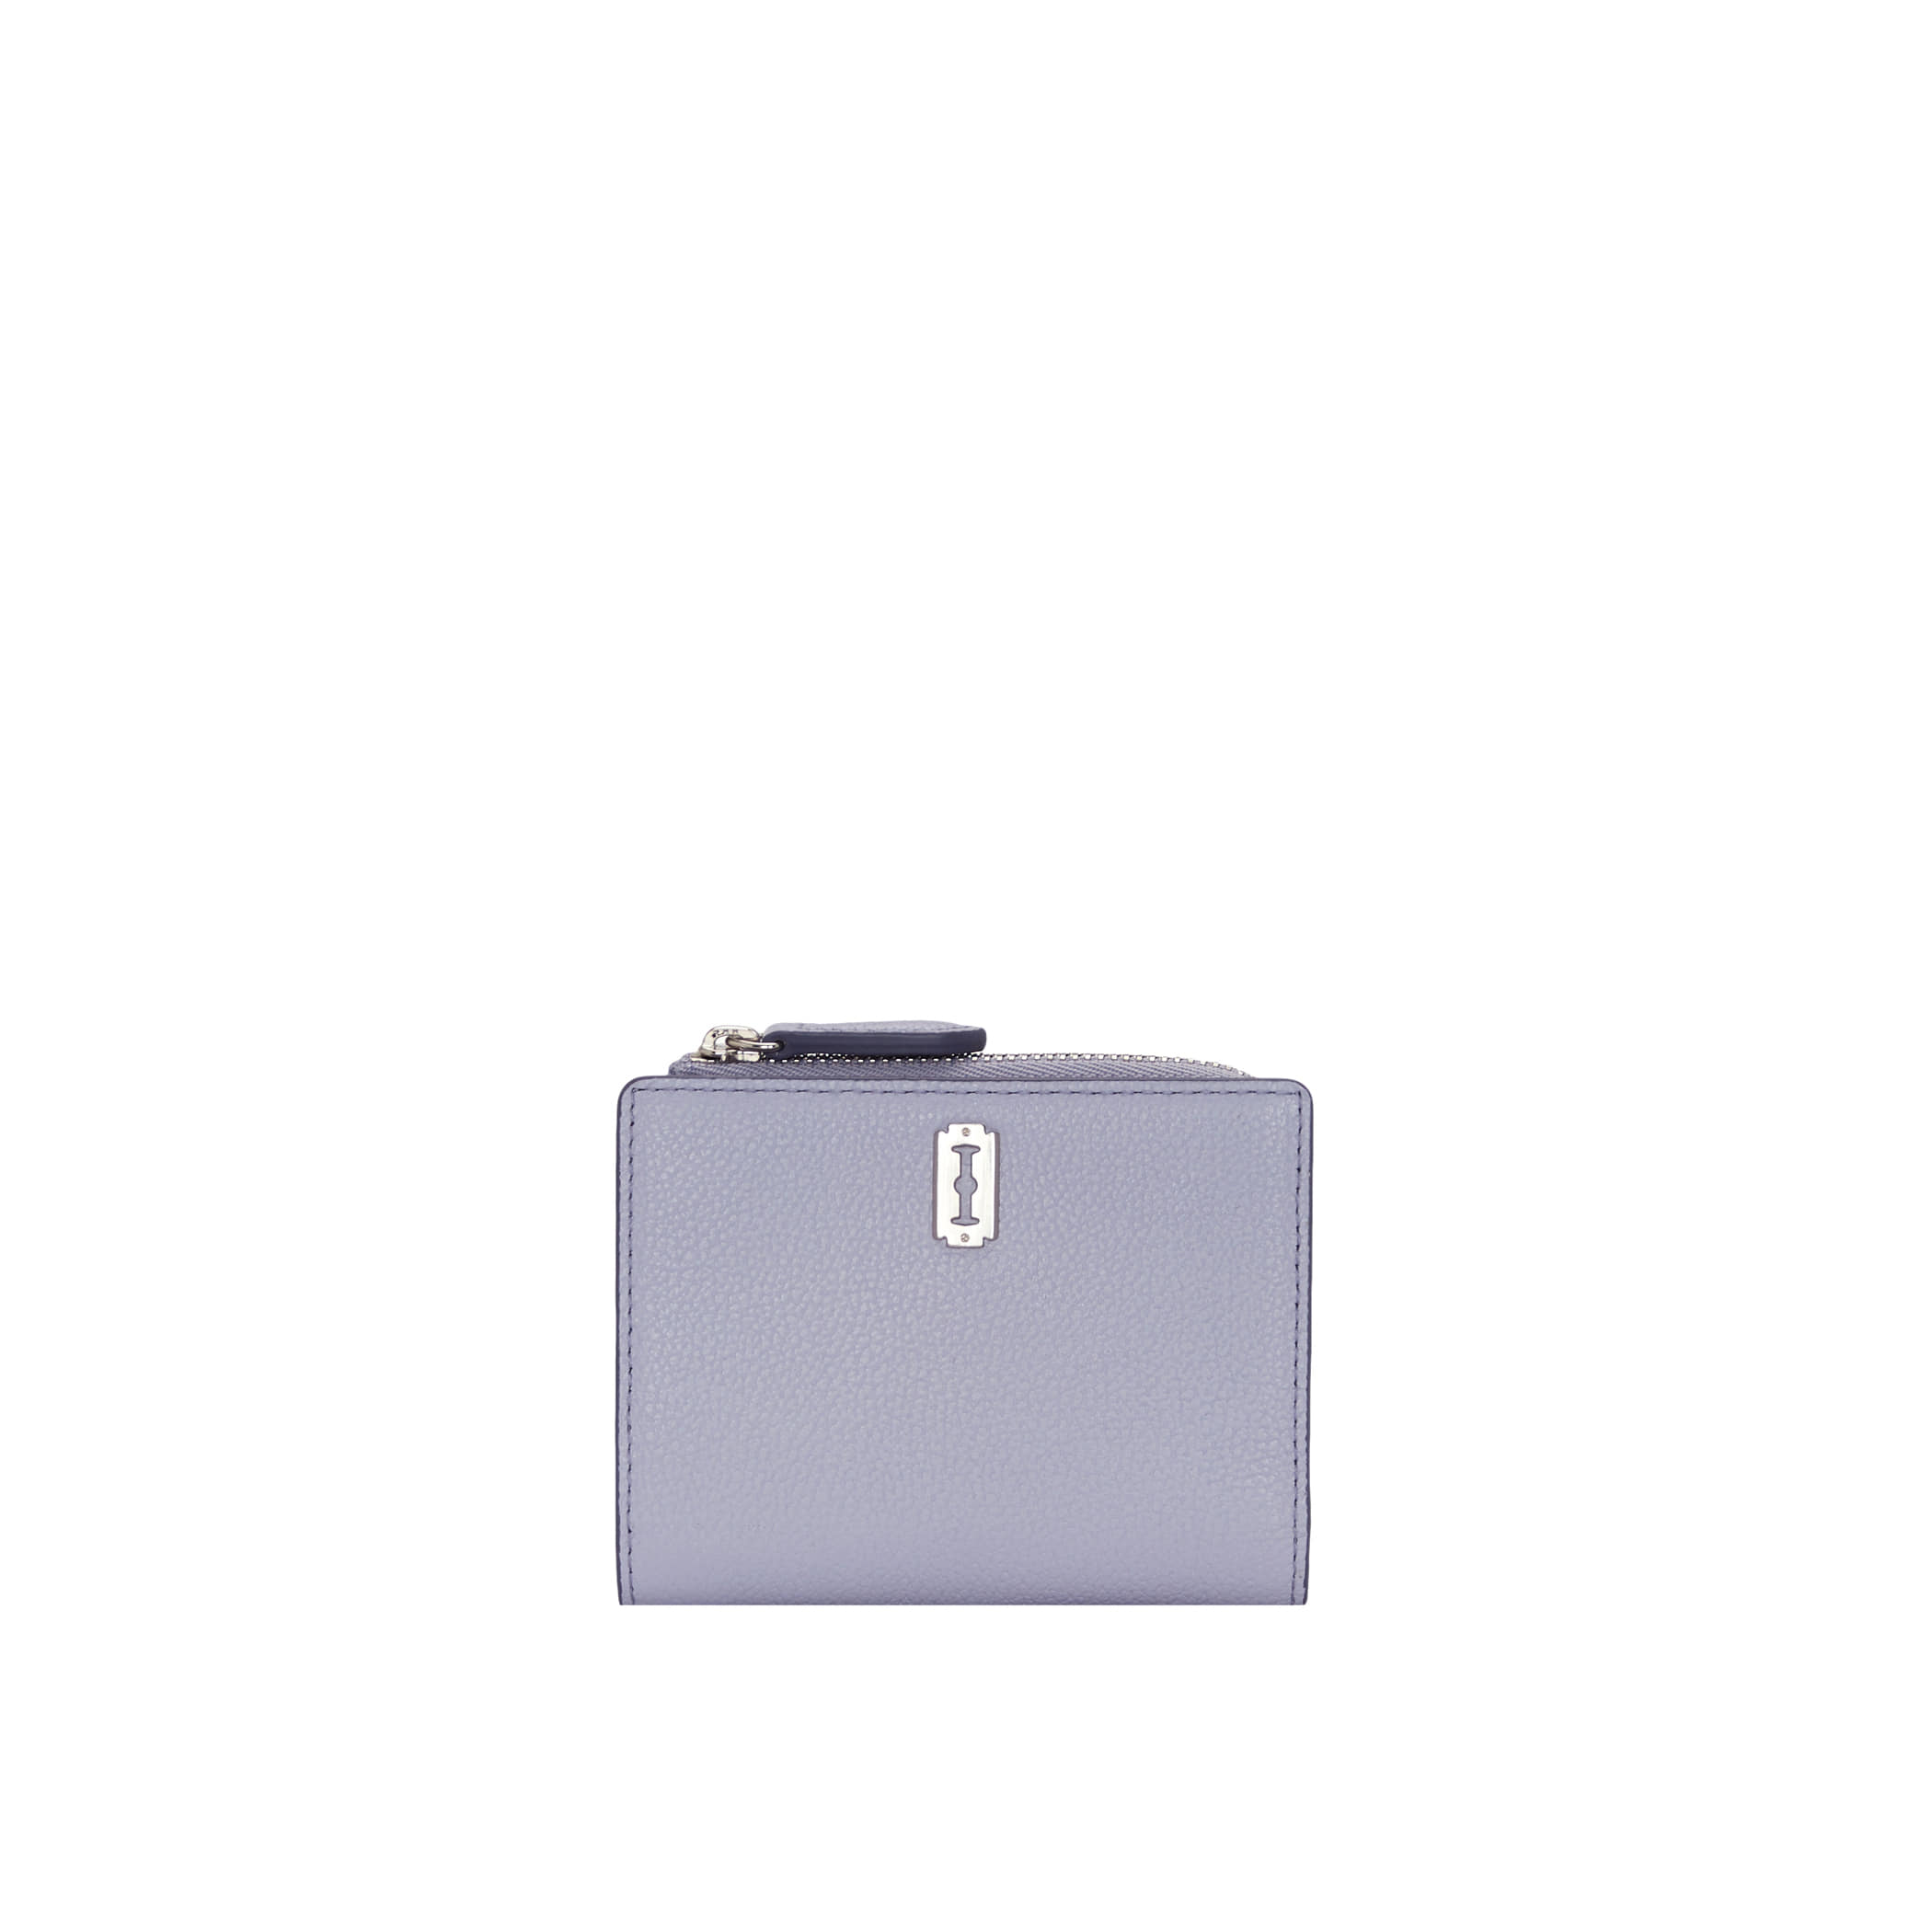 Perfec Flip wallet (퍼펙 플립 지갑) Lavender